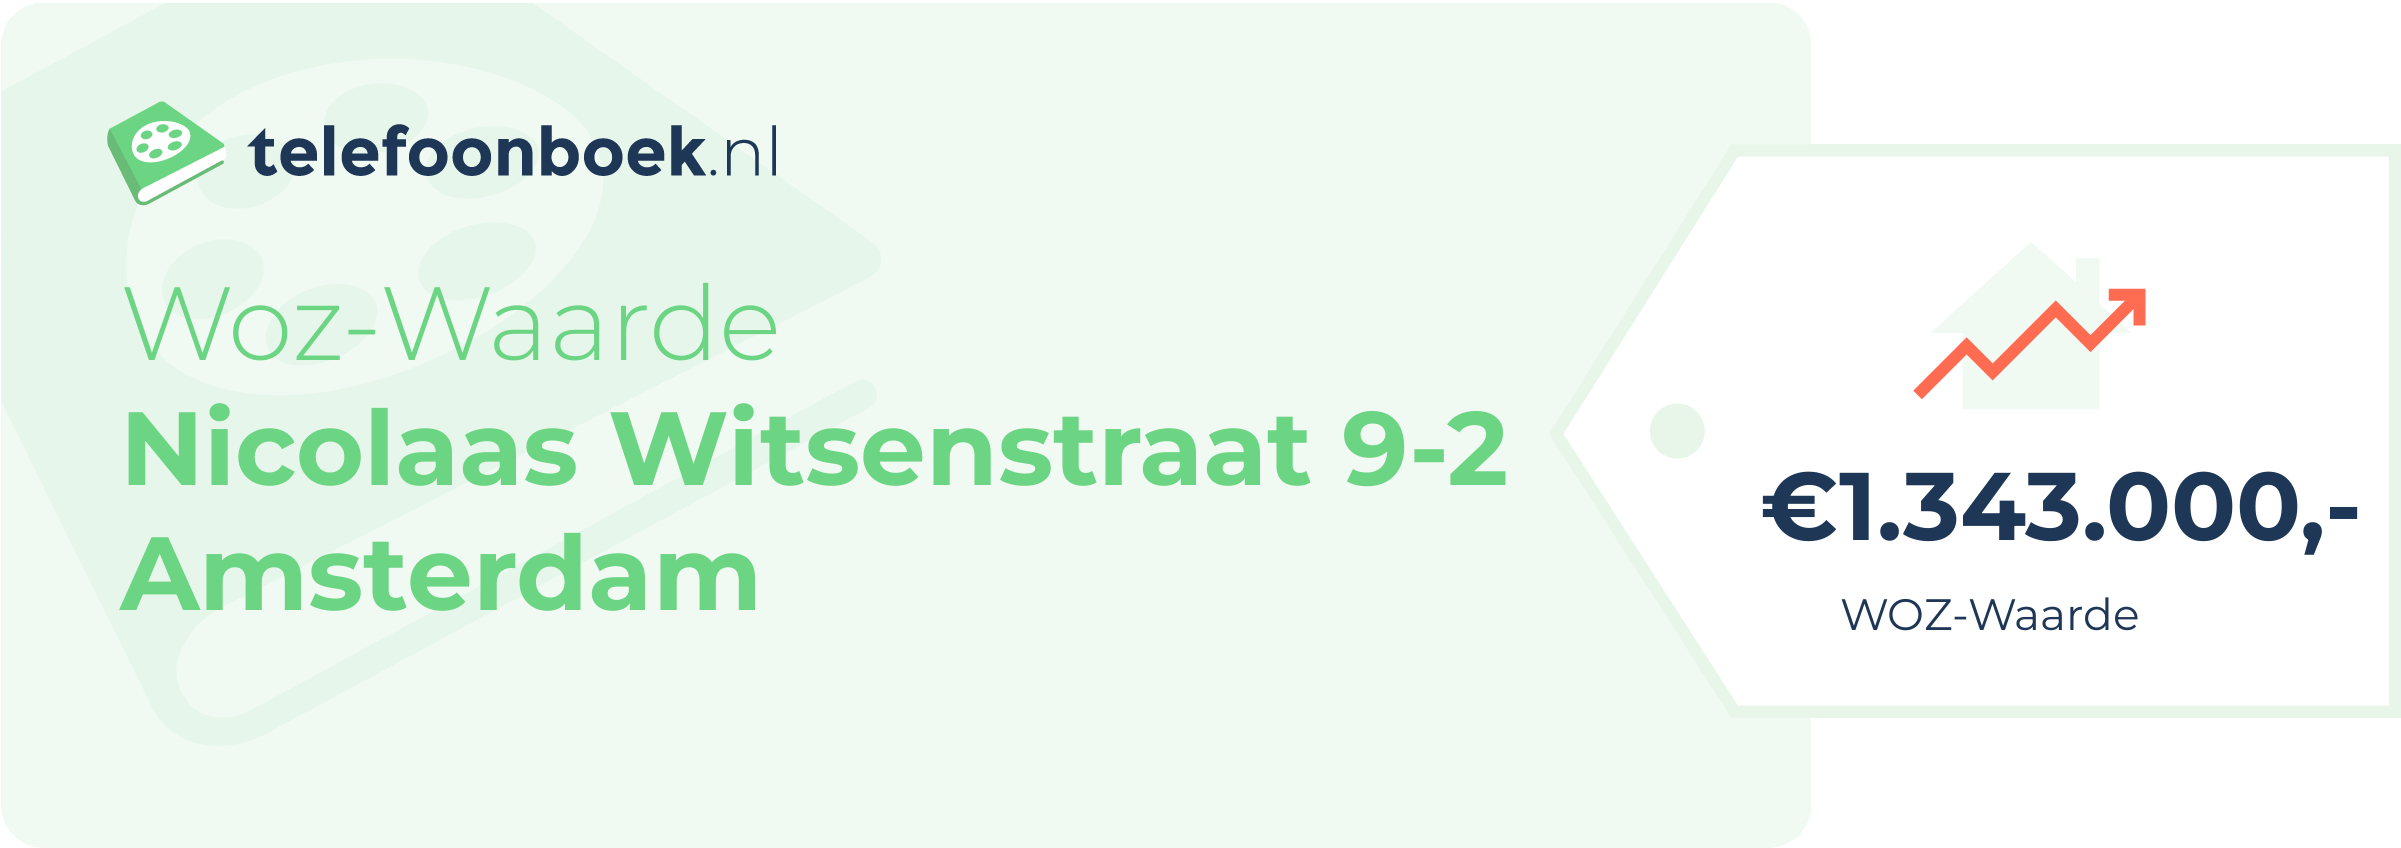 WOZ-waarde Nicolaas Witsenstraat 9-2 Amsterdam